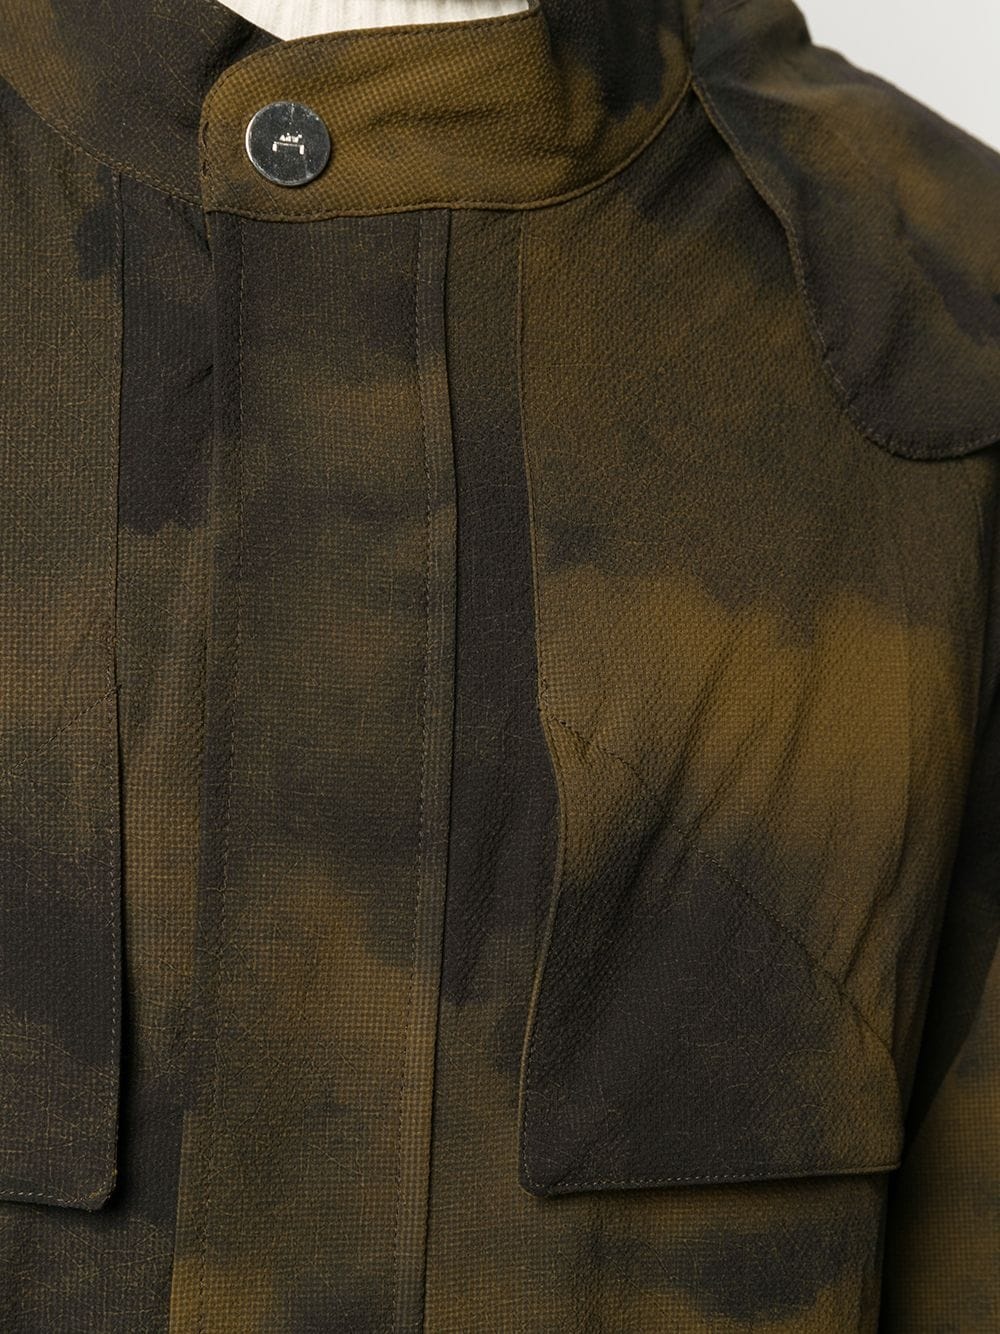 camouflage print coat - 5